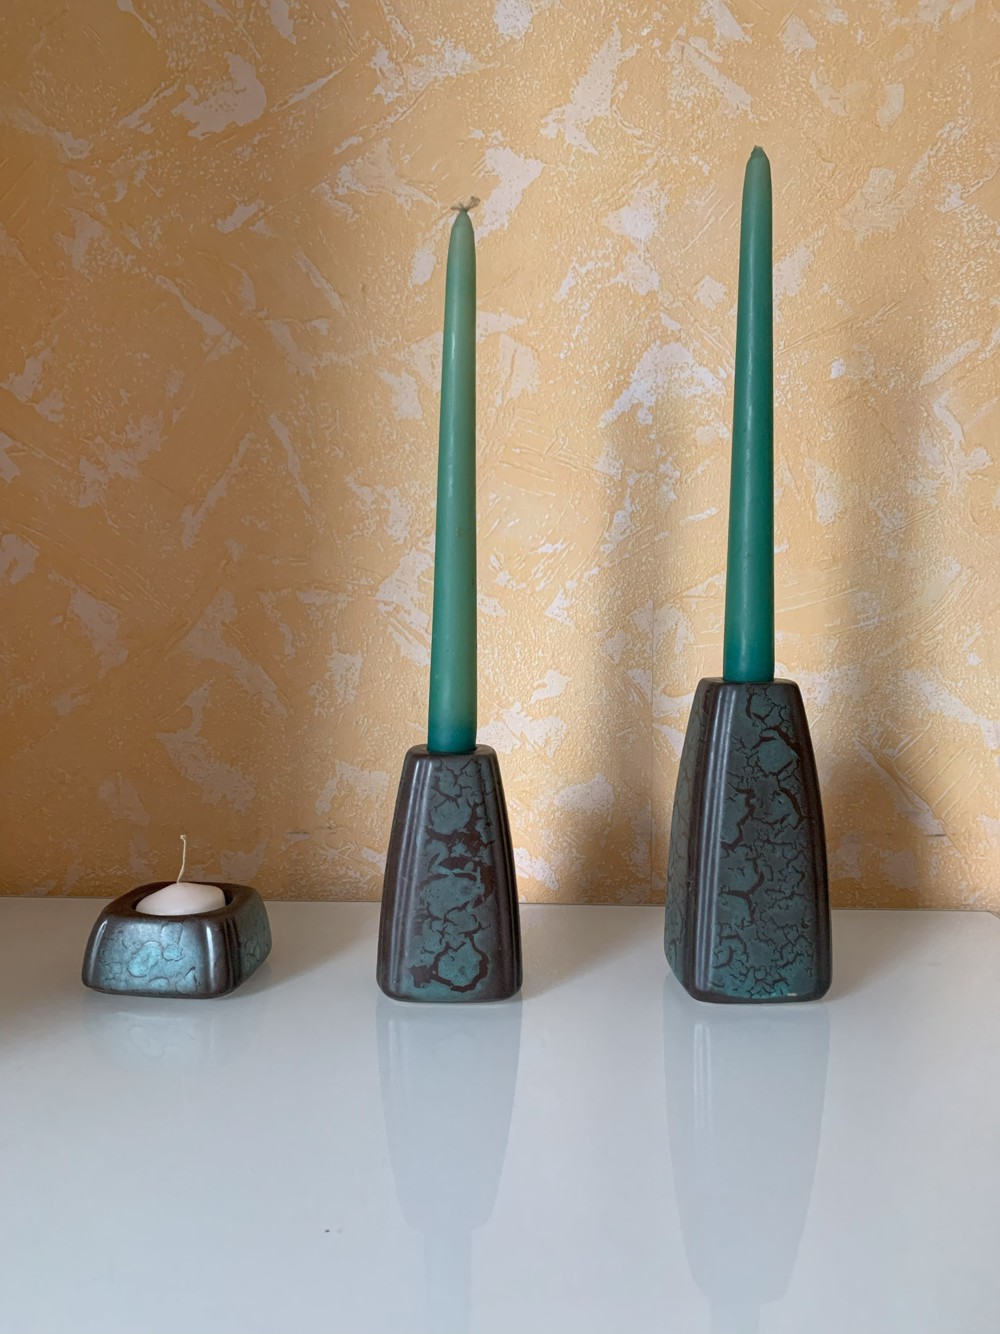 3 dekorative Kerzenhalter aus Keramik